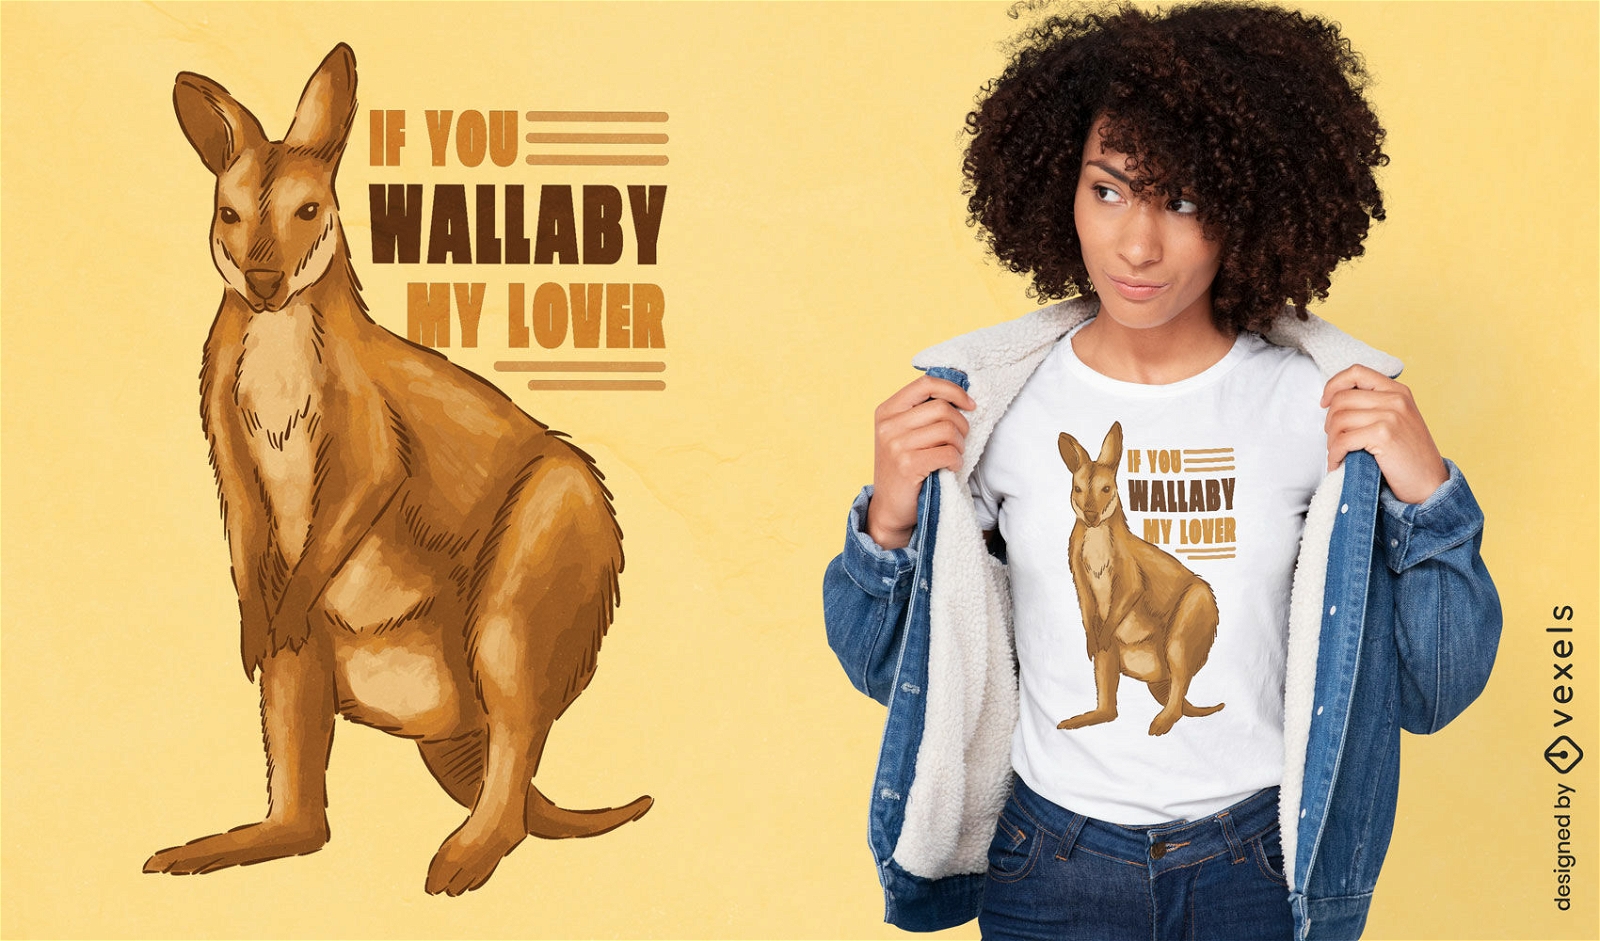 Wallaby mein Liebhaber-T-Shirt-Design